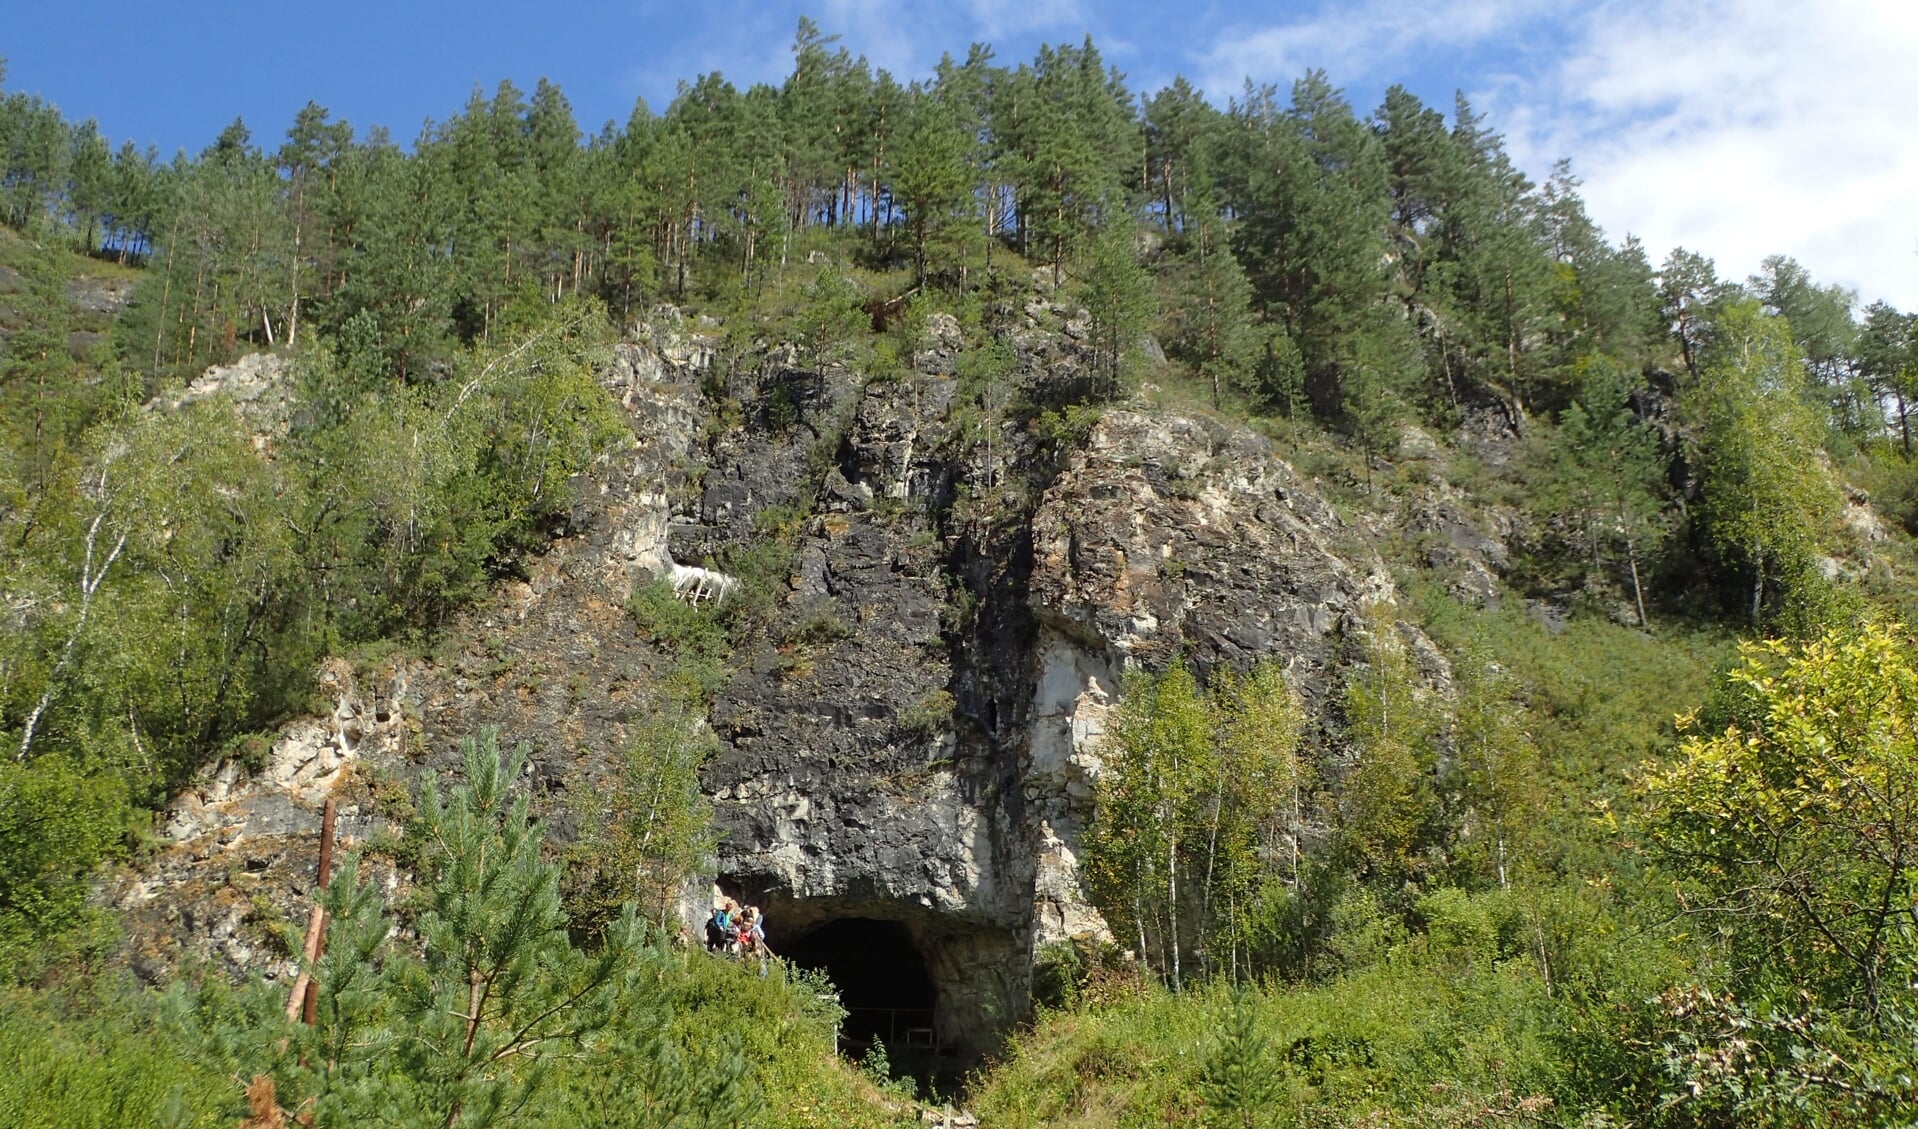 De grot waar de fossielen zijn gevonden